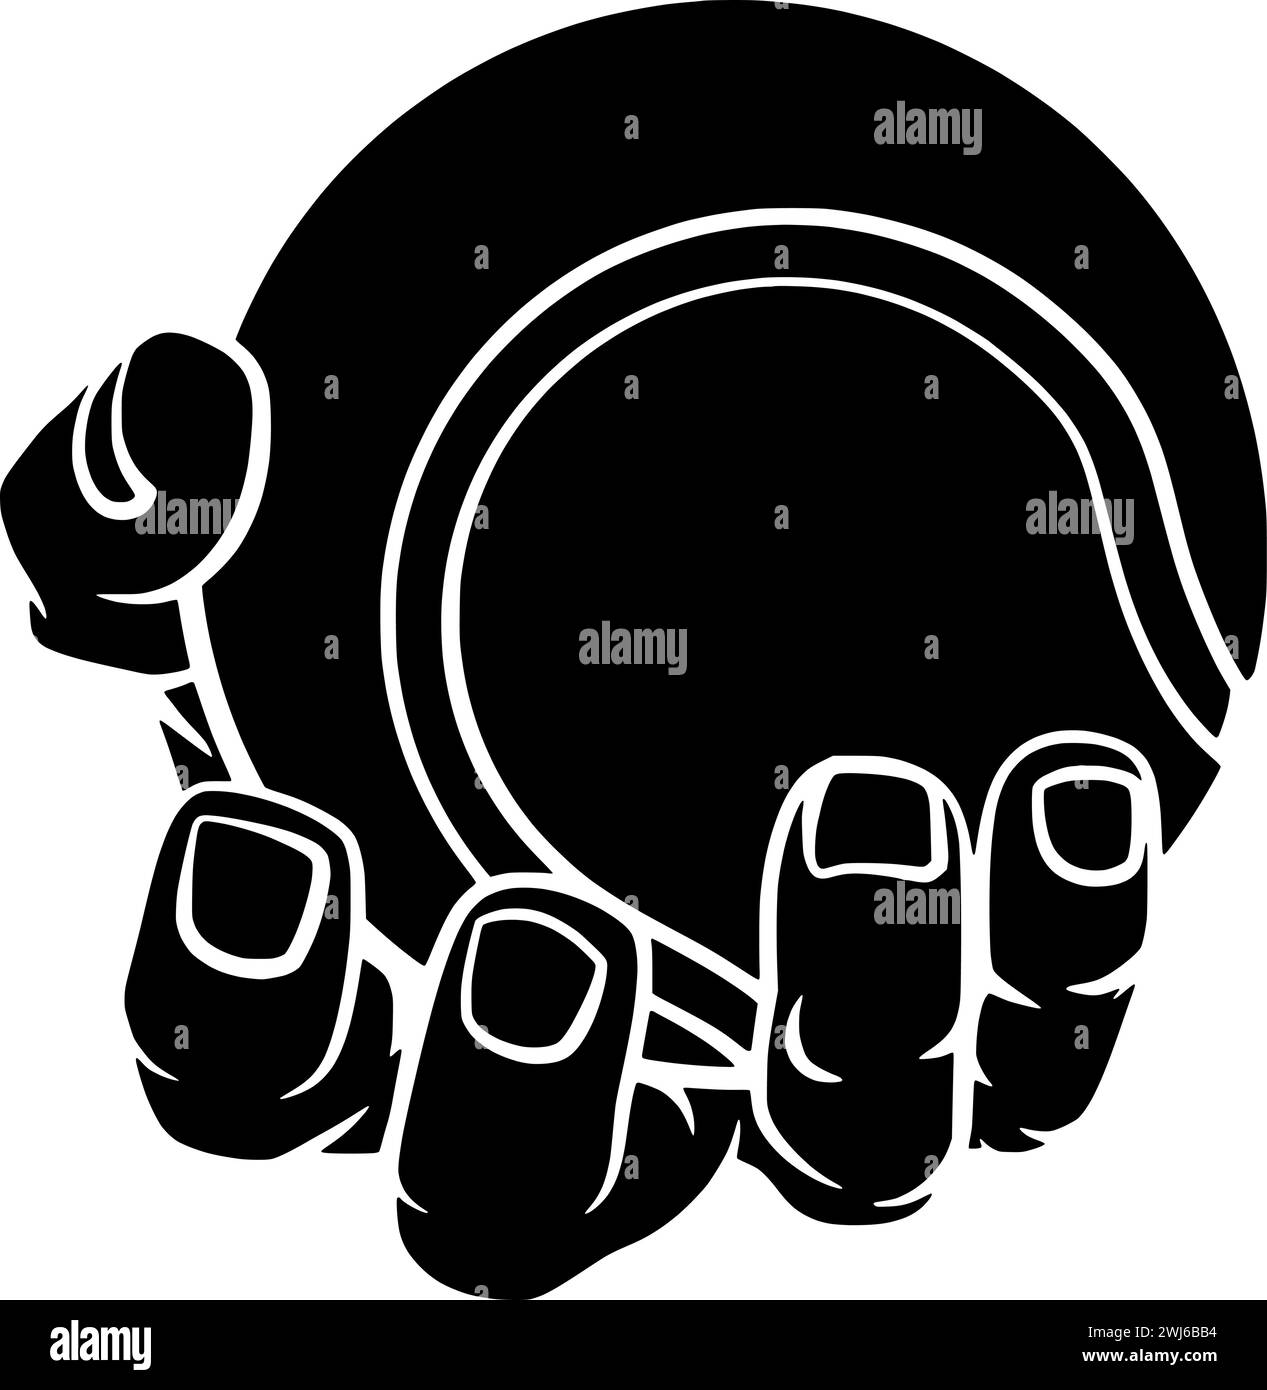 Schwarze Kugel-Silhouette oder flache Tennis-Illustration mit Handlogo-Schläger für Ausrüstung mit Sportsykone und Spiel Formspiel als Wettkampf zur Erholung Stock Vektor